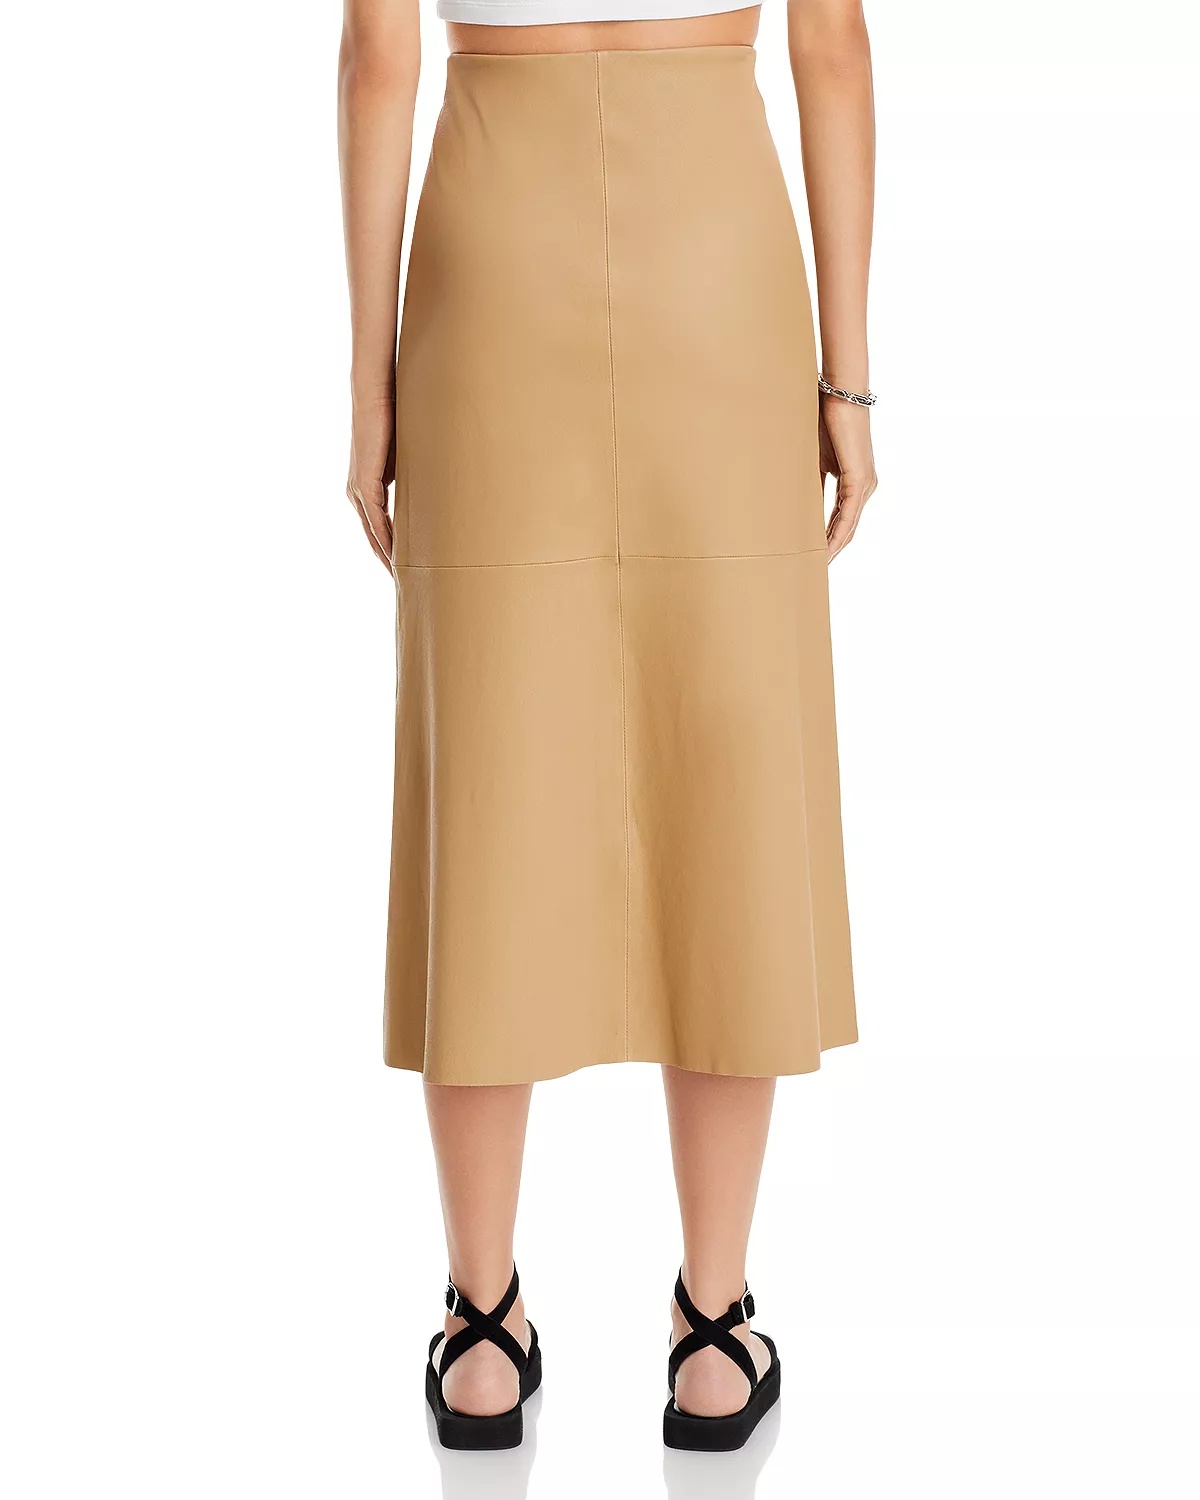 Simoas Leather Skirt - 3